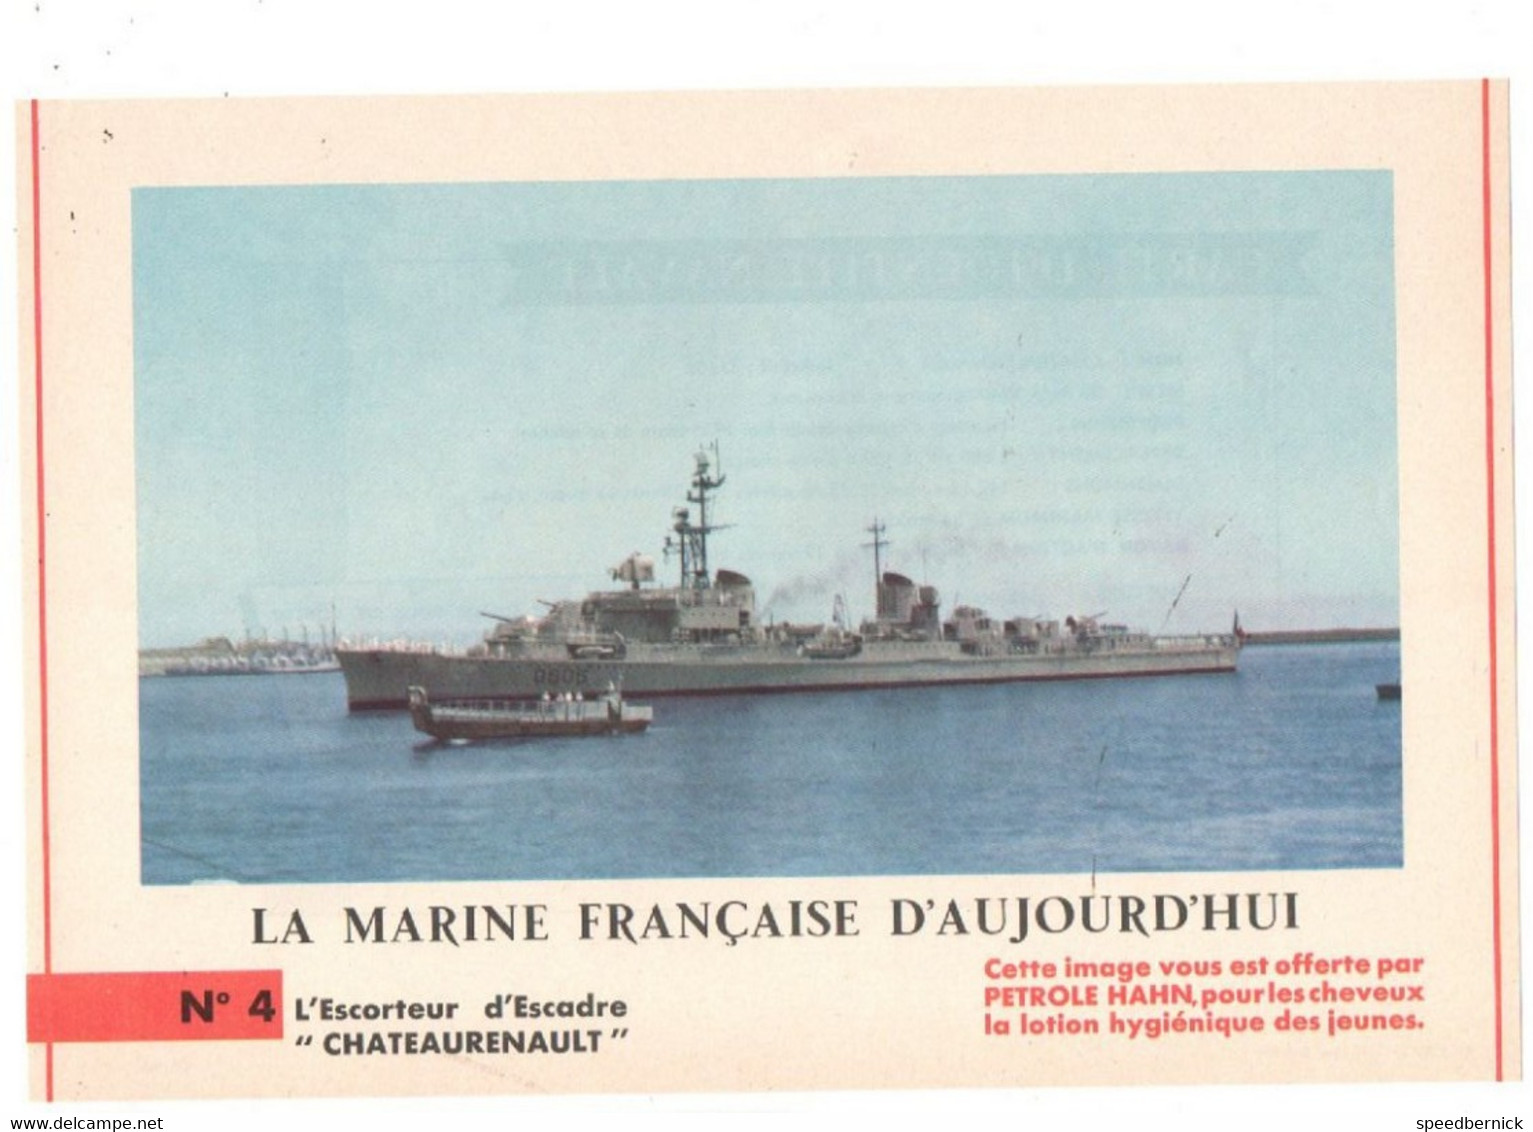 LA MARINE FRANCAISE AUJOURD'HUI N° 4 Escorteur Escadre CHATEAURENAULT -Publicité Pétrole Hahn -1962 - Boats